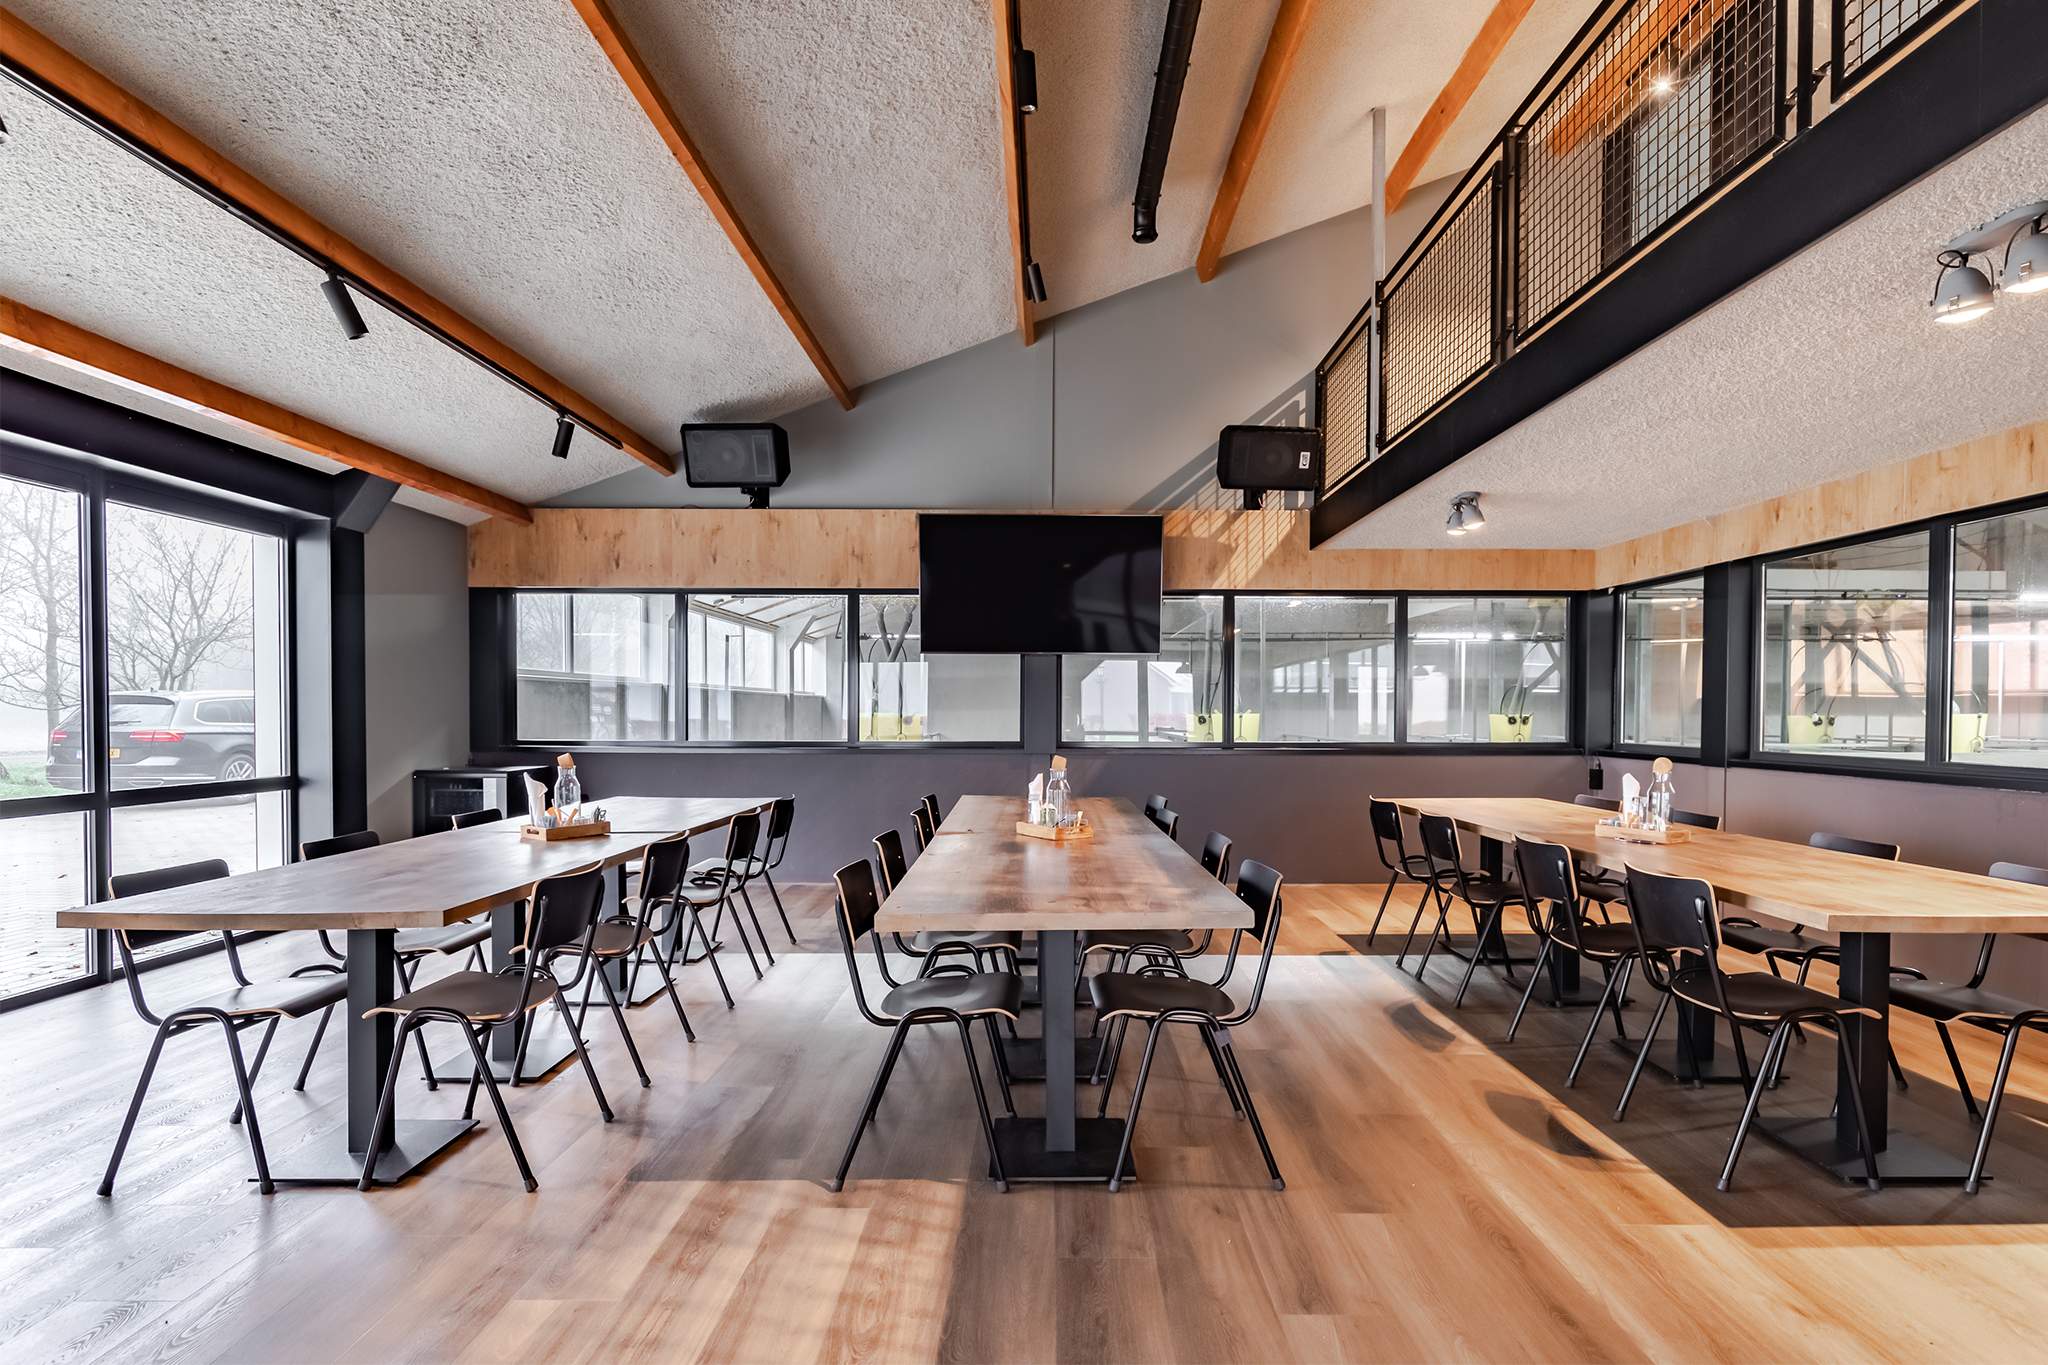 Maatwerk interieur kantine met houten tafels in combinatie met staal en beton